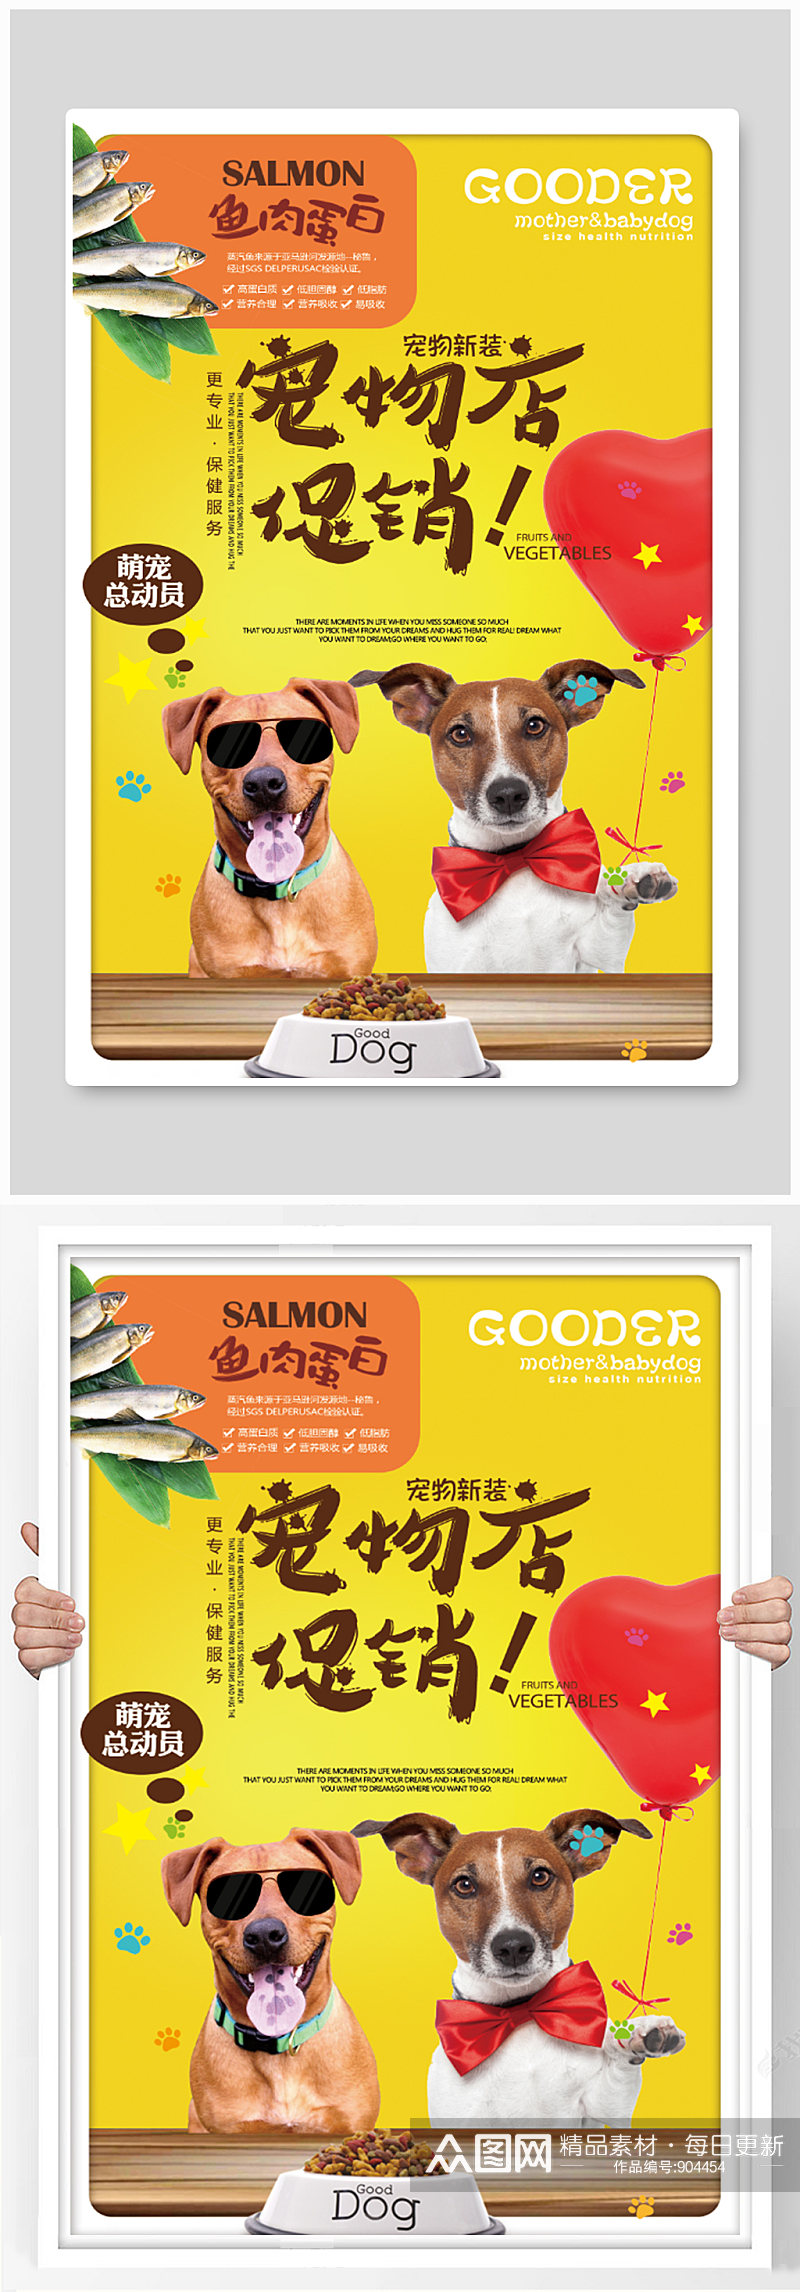 宠物店促销活动海报设计素材